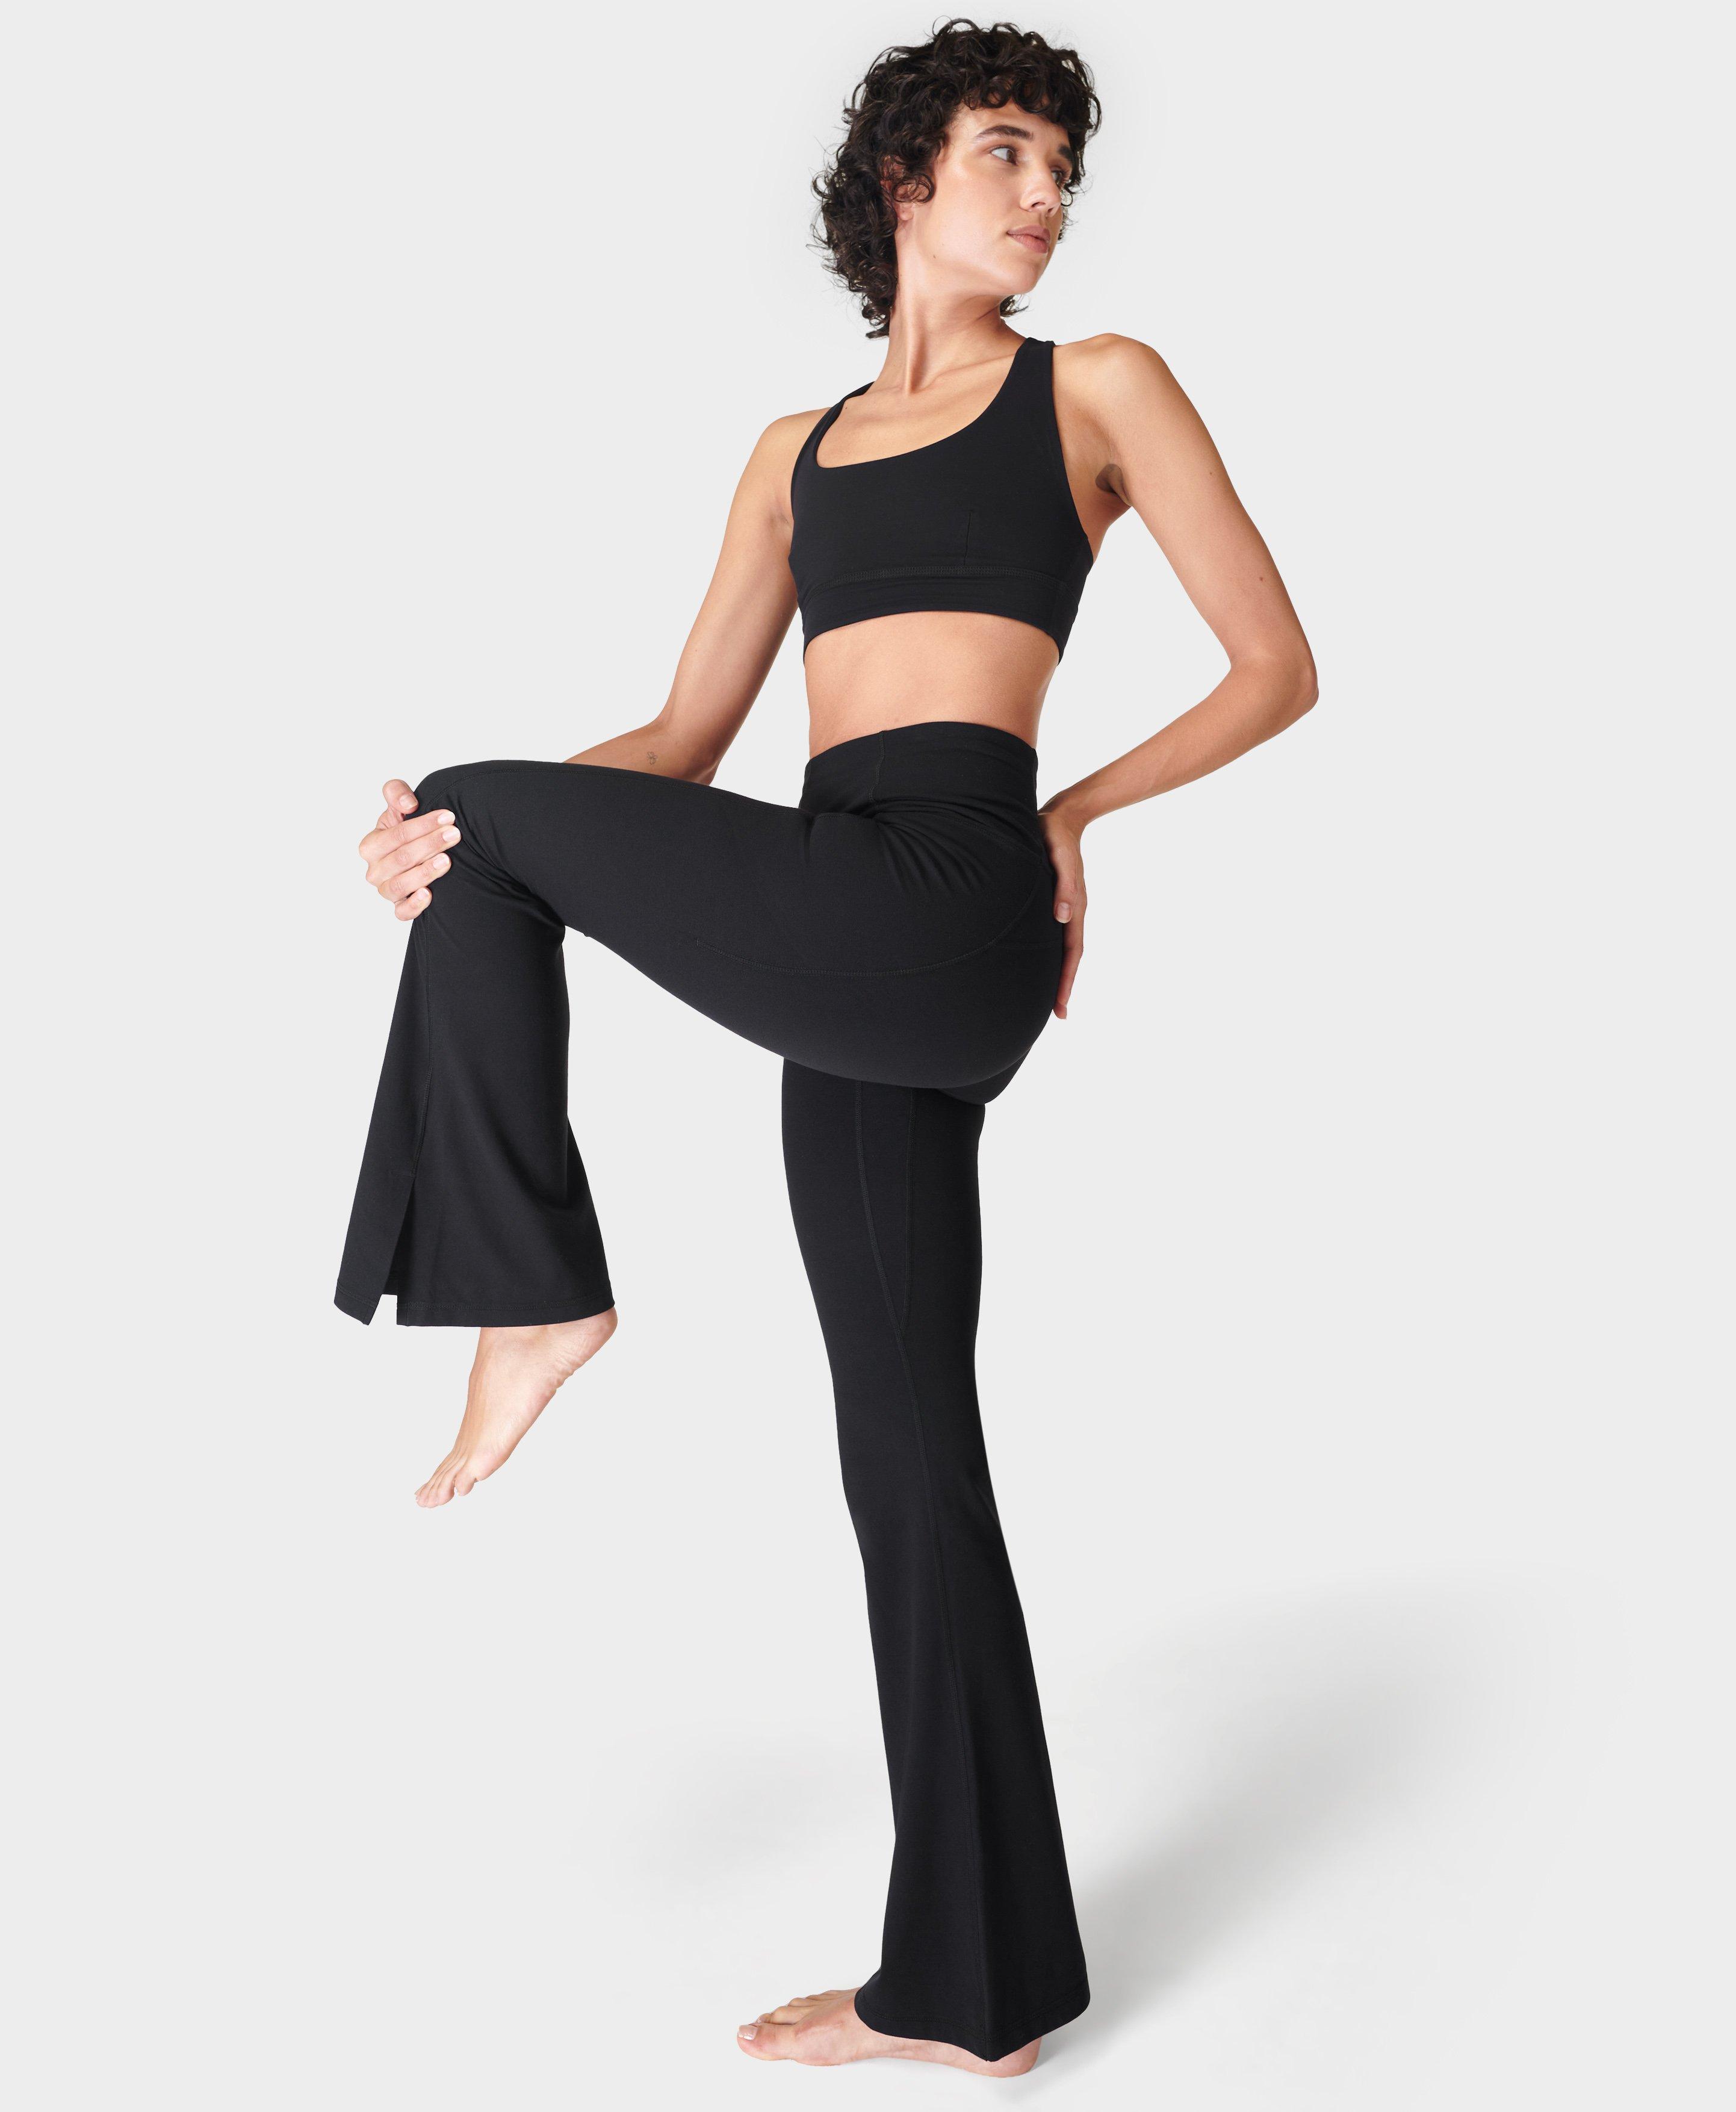 Flare Leggings for Women with Pockets Short Women's Yoga Pants